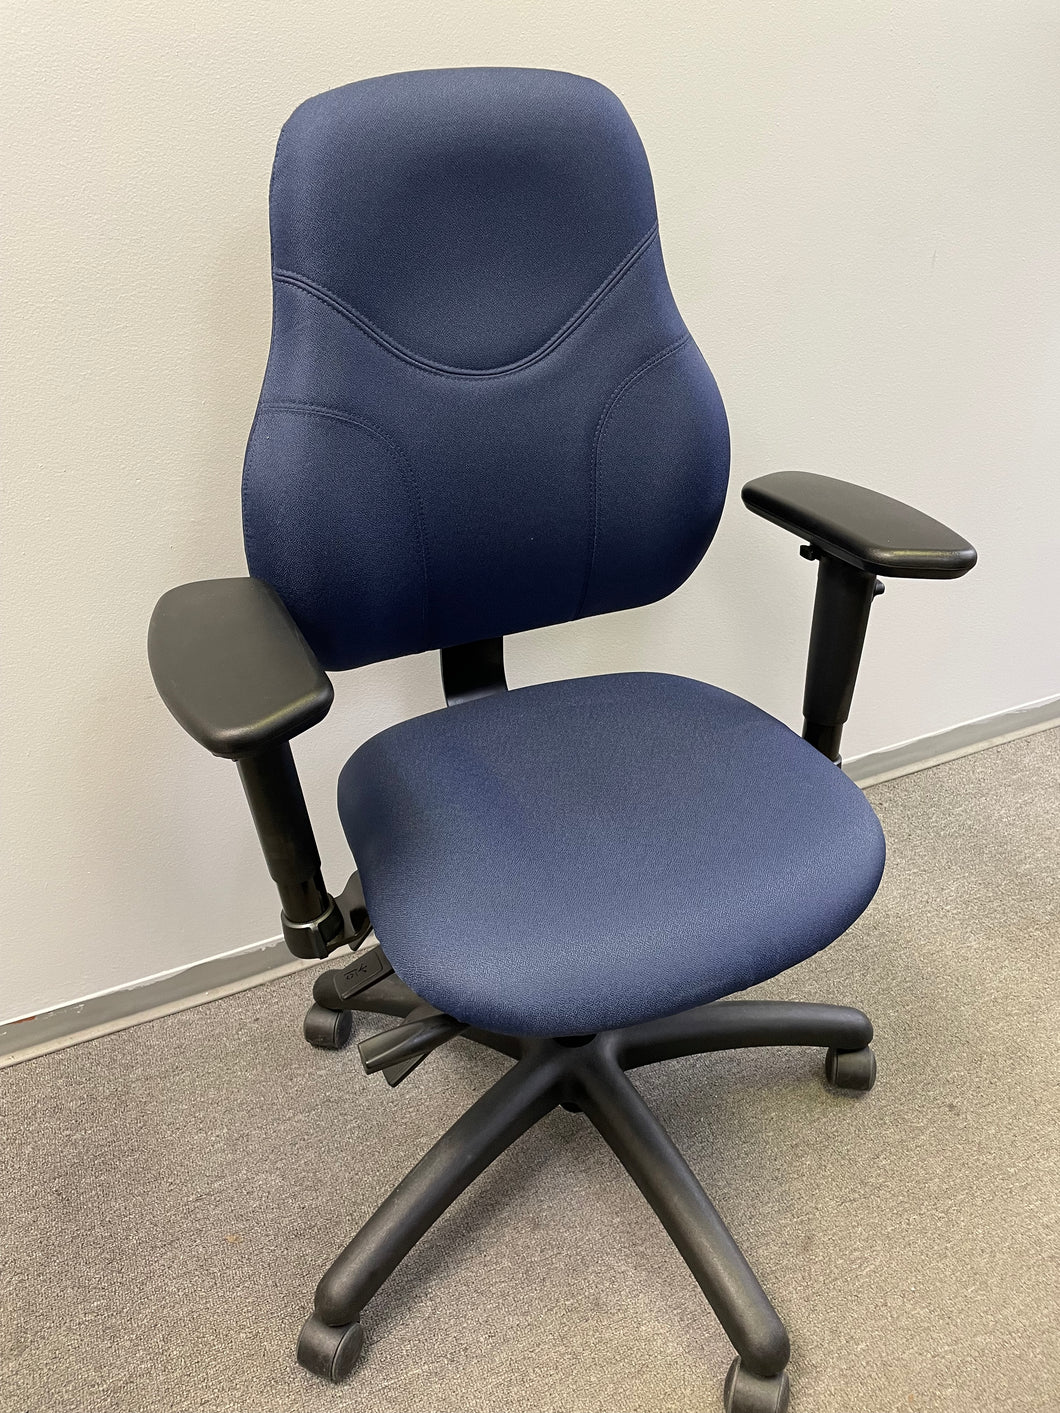 Used Global Tritek Ergo-Select Multi-Tilter High-Back Ergonomic Chair